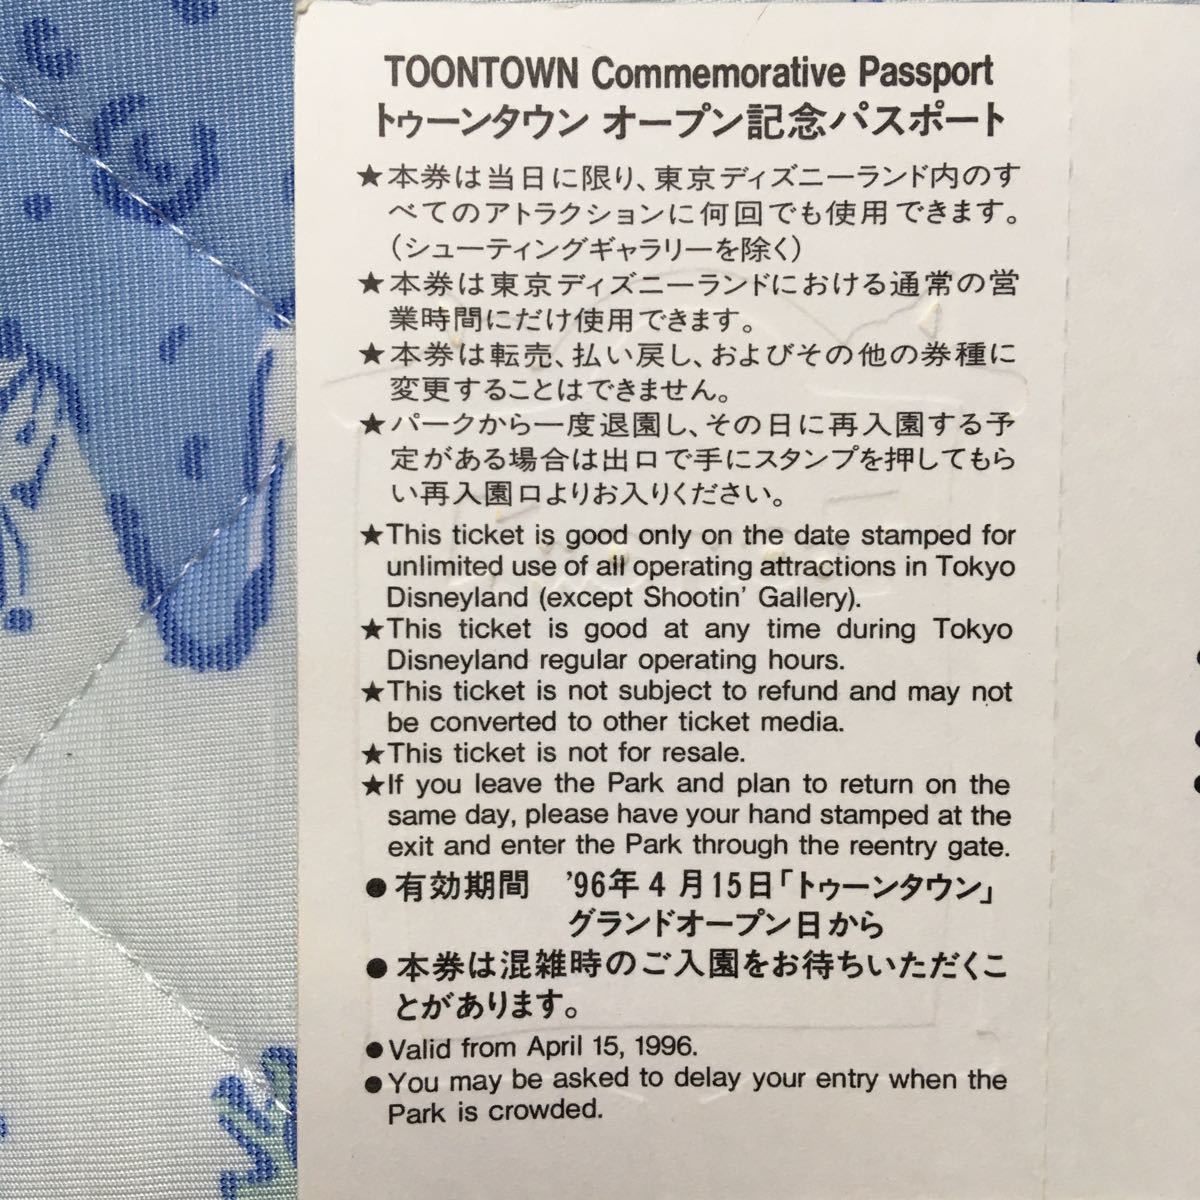 未使用 東京ディズニーランド 1996 4 15 トゥーンタウンオープン記念パスポート 23 5 31 まで使用可能